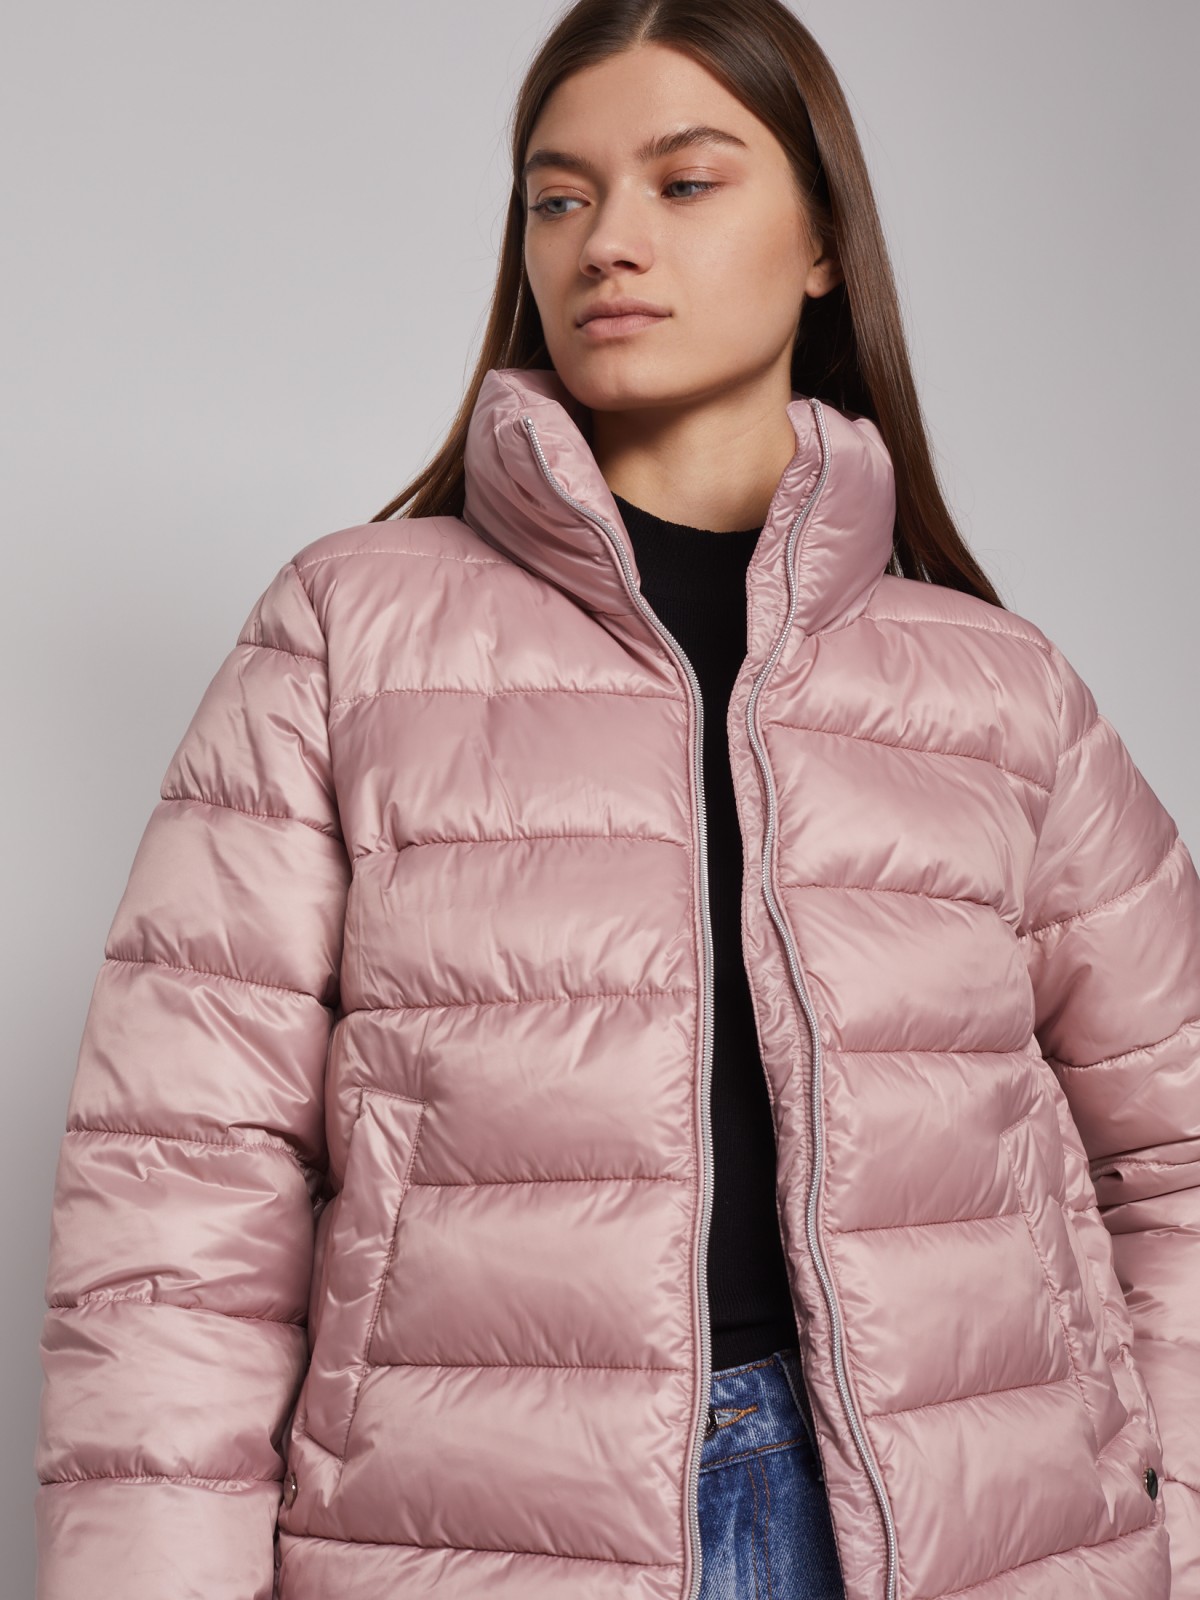 Тёплая куртка с воротником-стойкой zolla 022335102054, цвет розовый, размер XS - фото 3